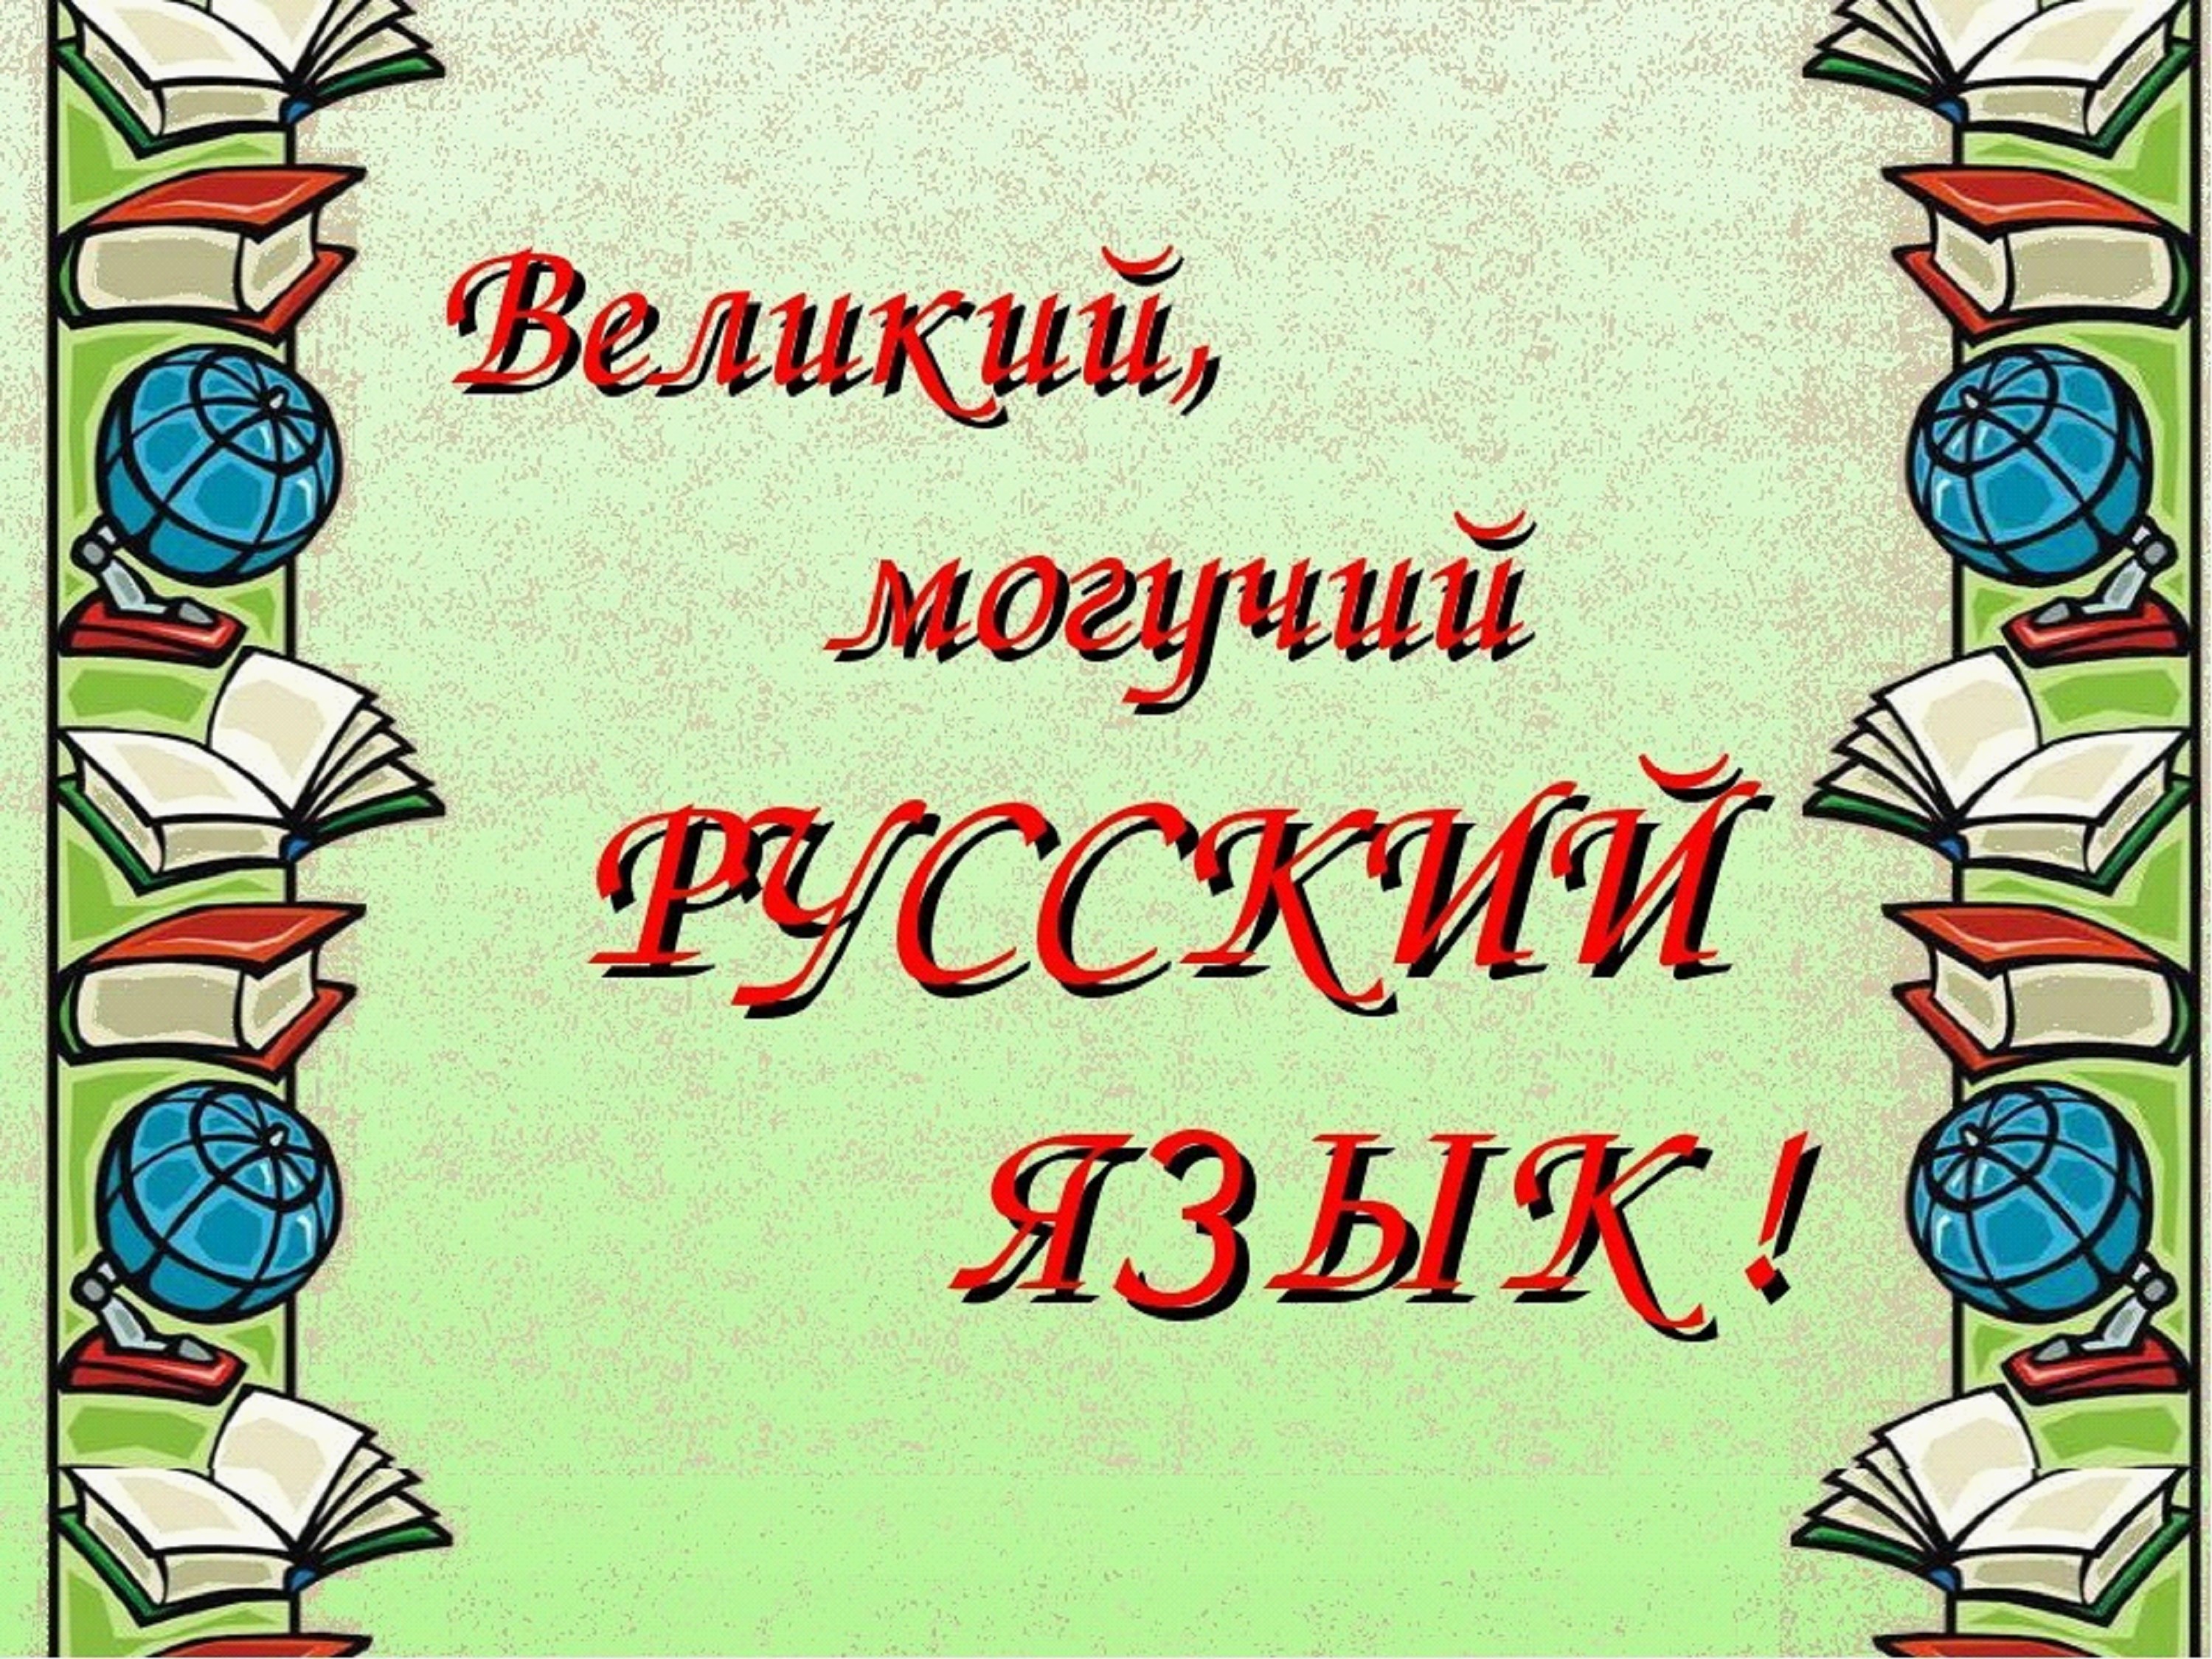 Русский язык рисунок